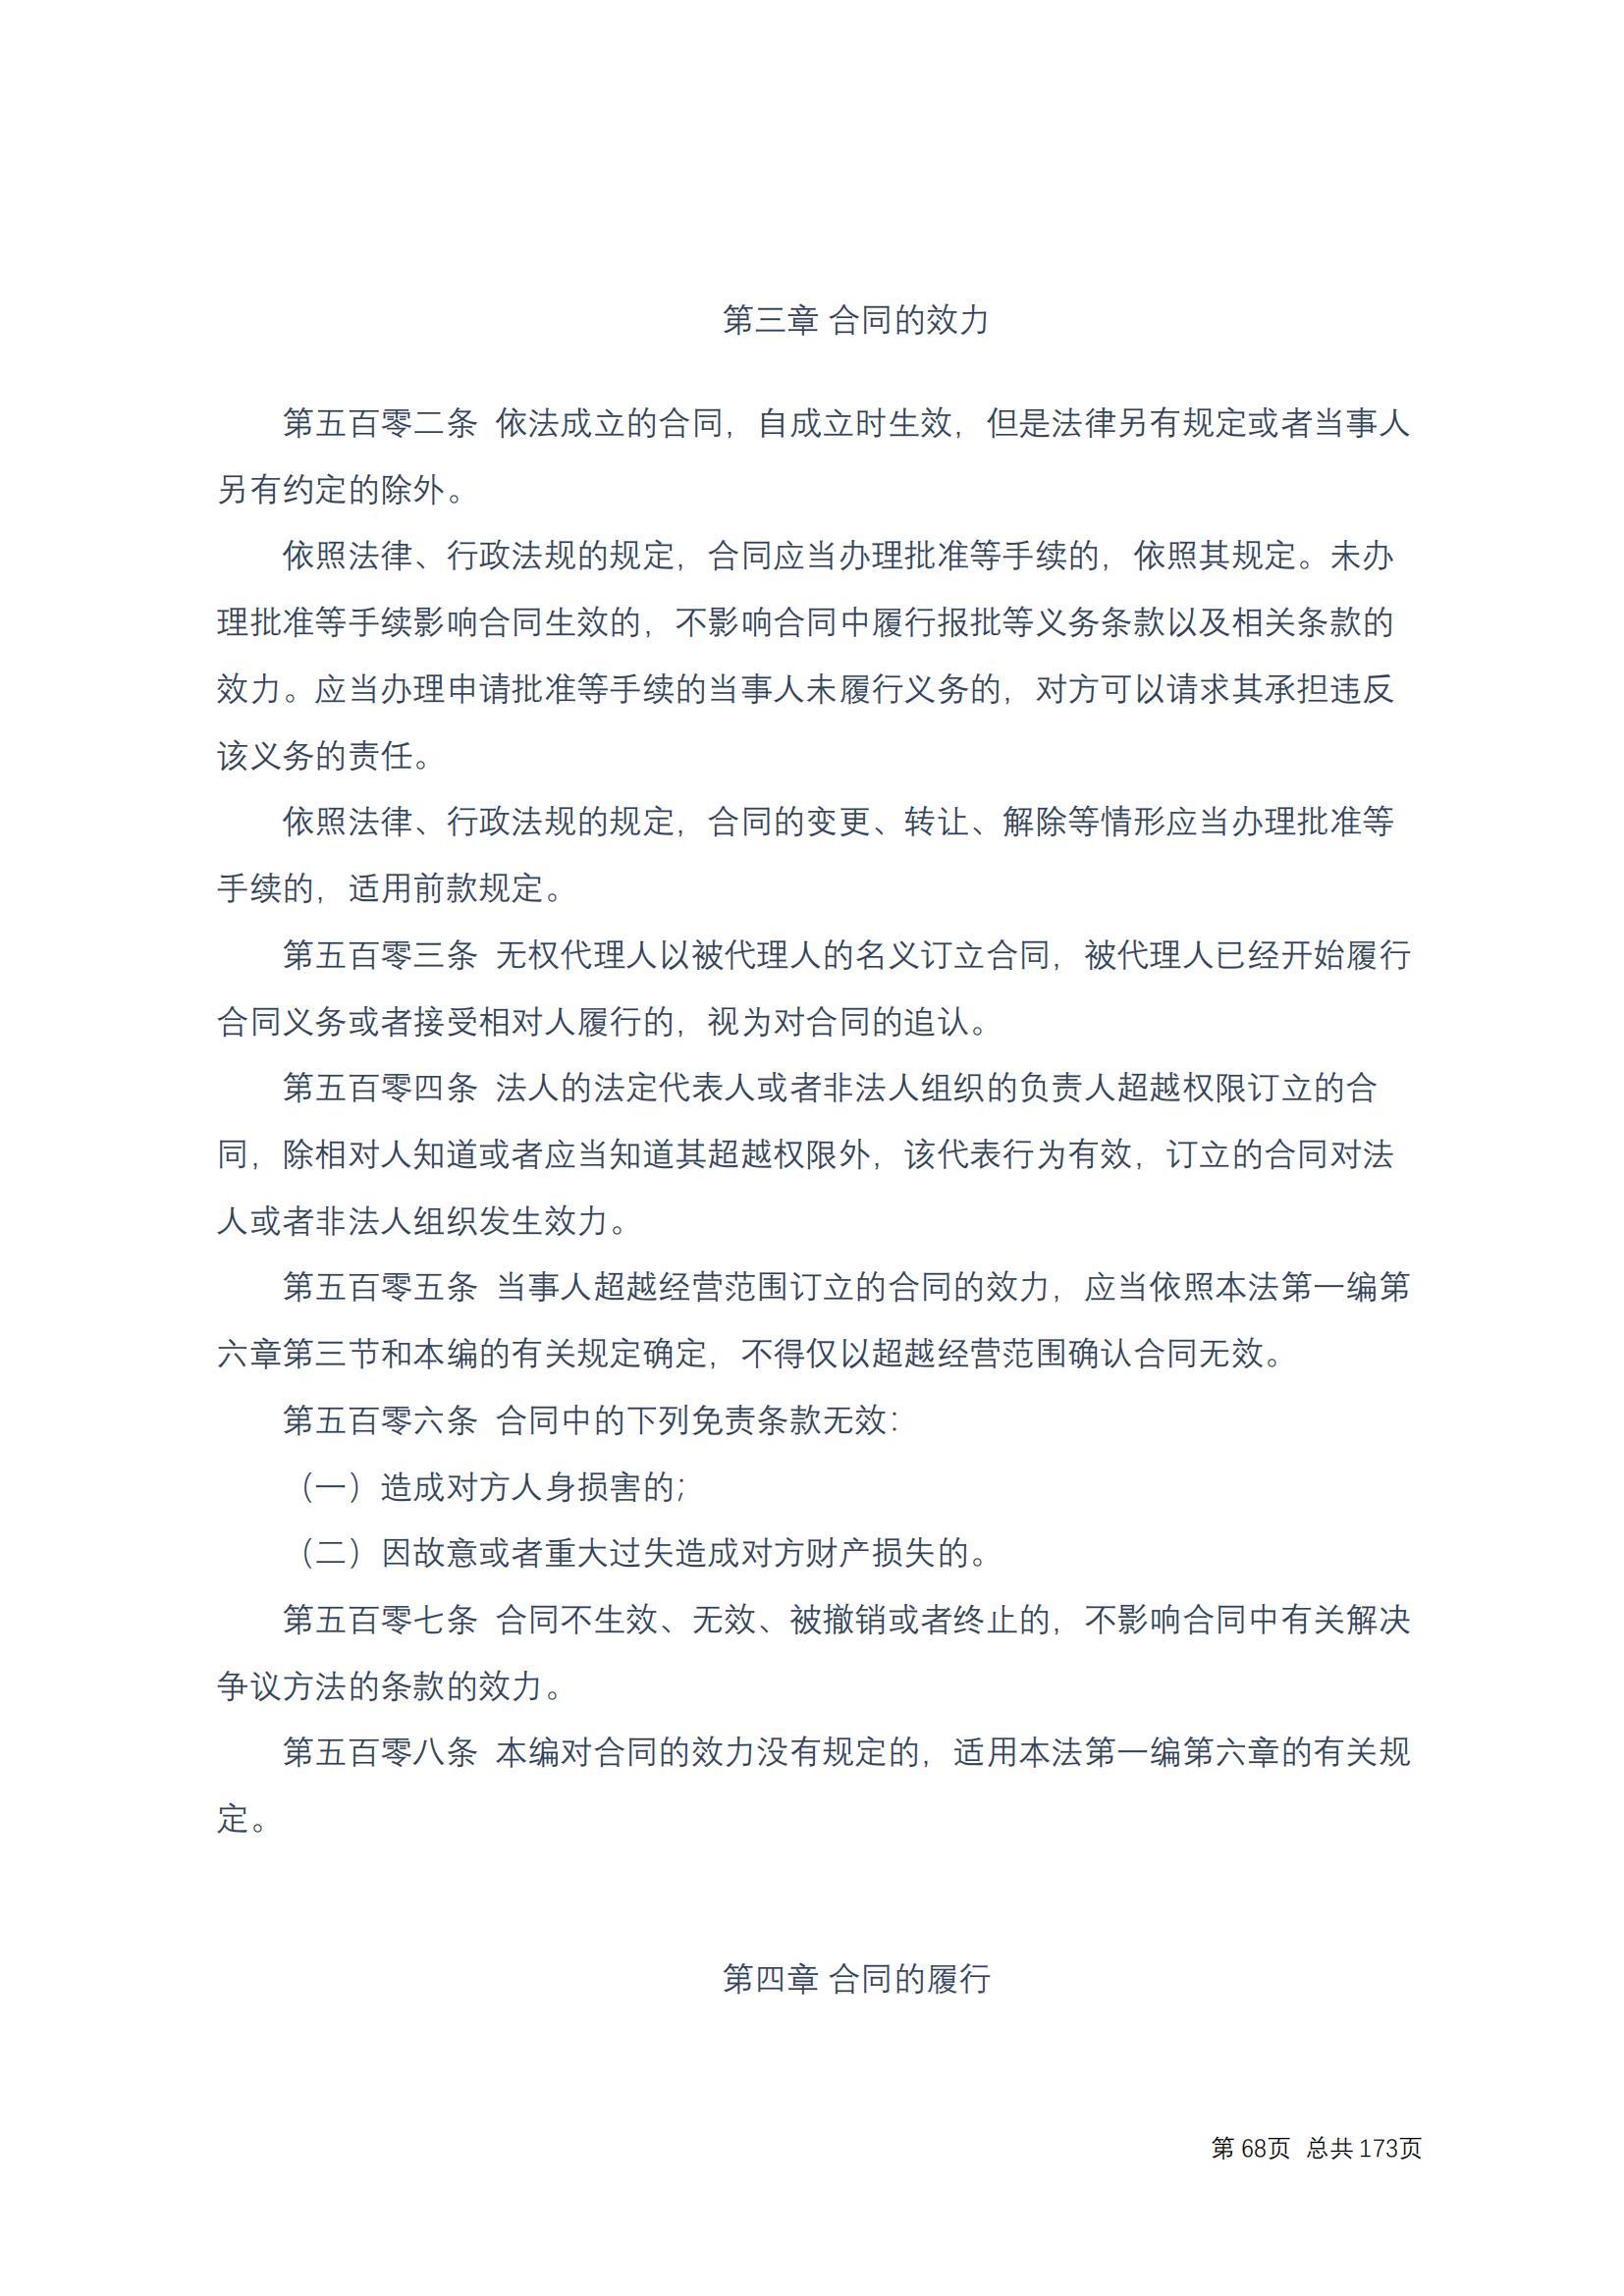 中华人民共和国民法典 修改过_67